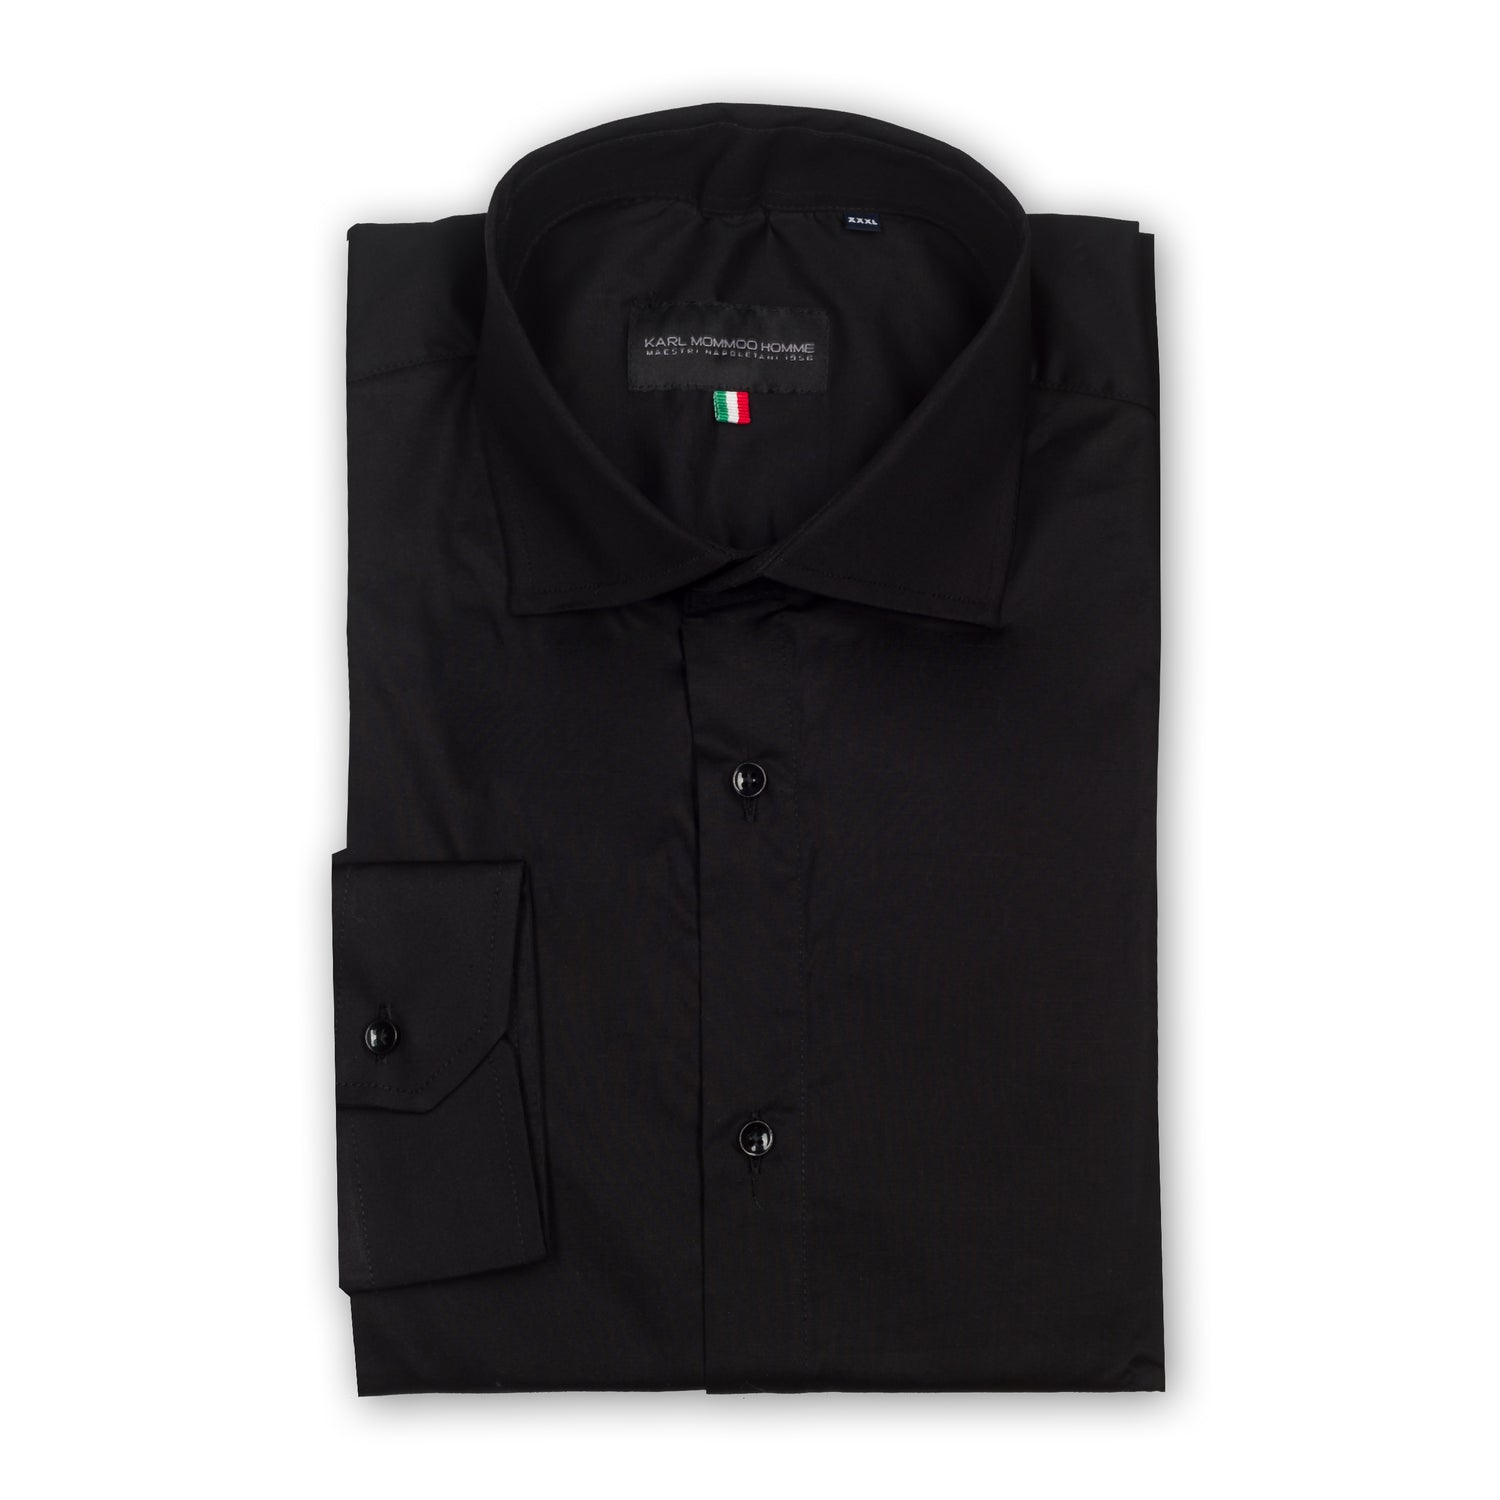 Karl Mommoo - Italienisches Herren-Hemd, schwarz, Baumwolle mit Elasthan, Modern Fit.